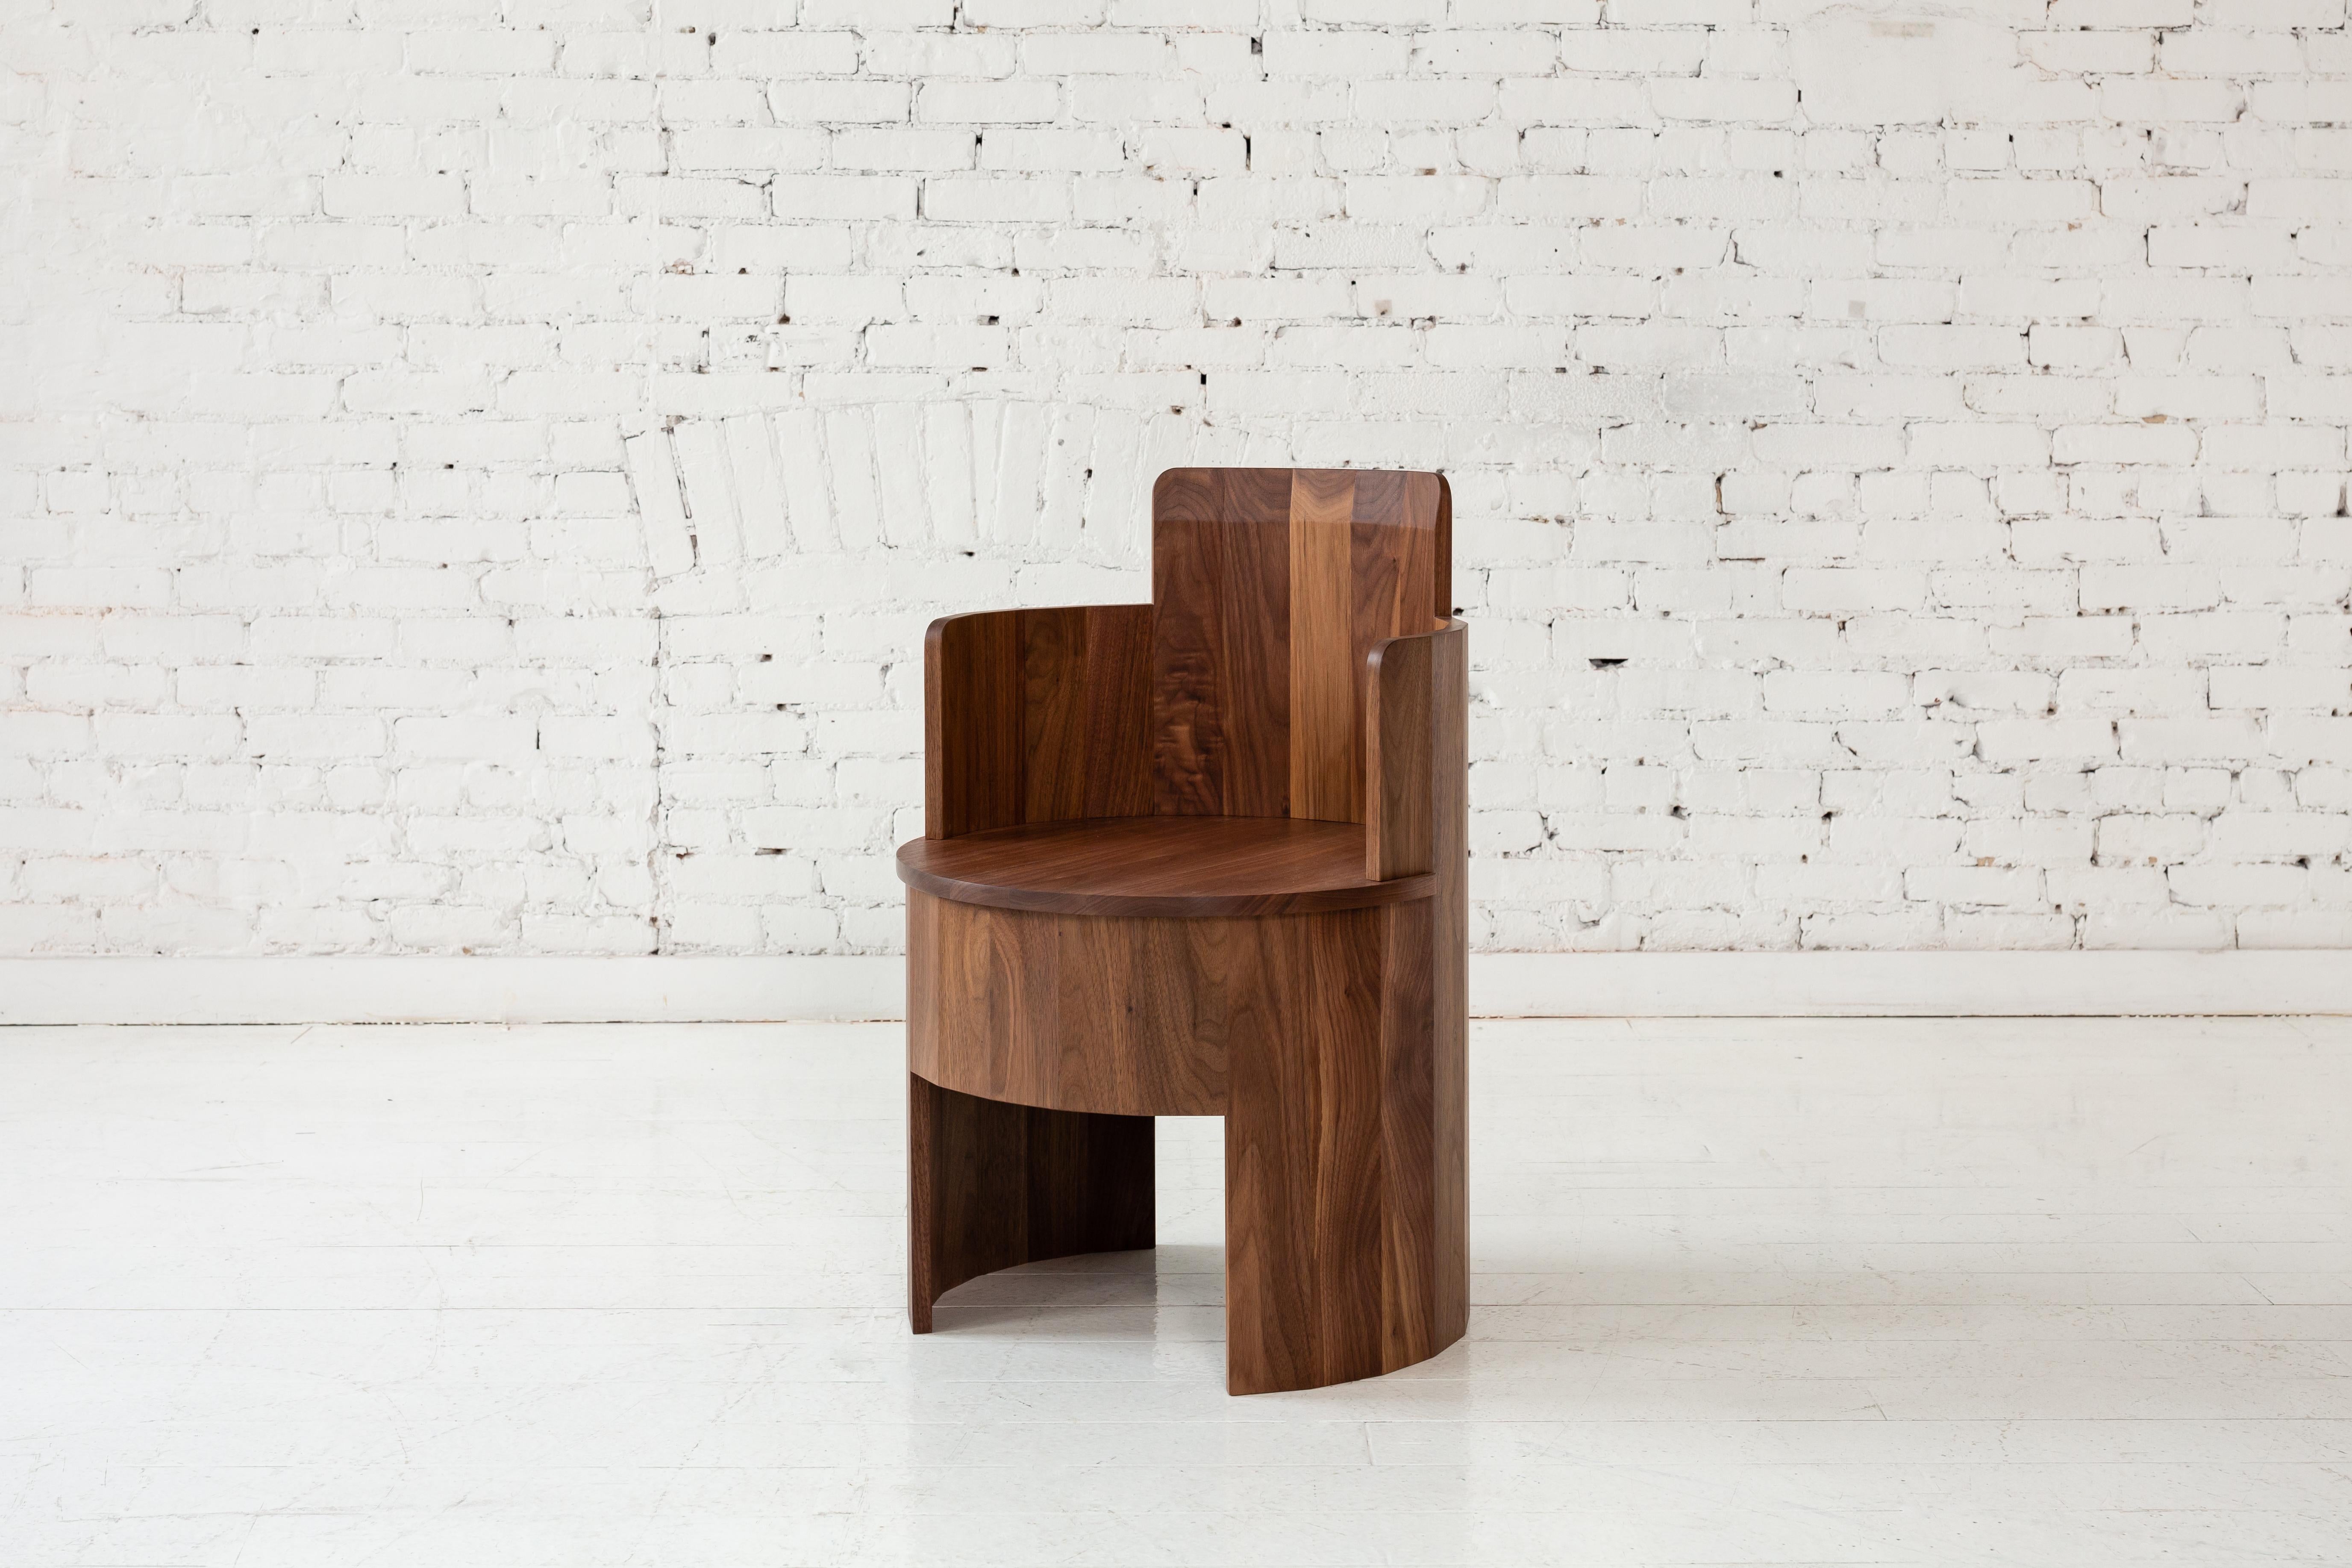 Dieser Beistellstuhl aus Holz ist Teil der neuen Cooperage Dining Kollektion. Jedes Stück weist große, facettierte, runde Elemente auf, die mit ihrem Namensgeber auf das traditionelle Küferhandwerk verweisen, das Fässer herstellt.

Der